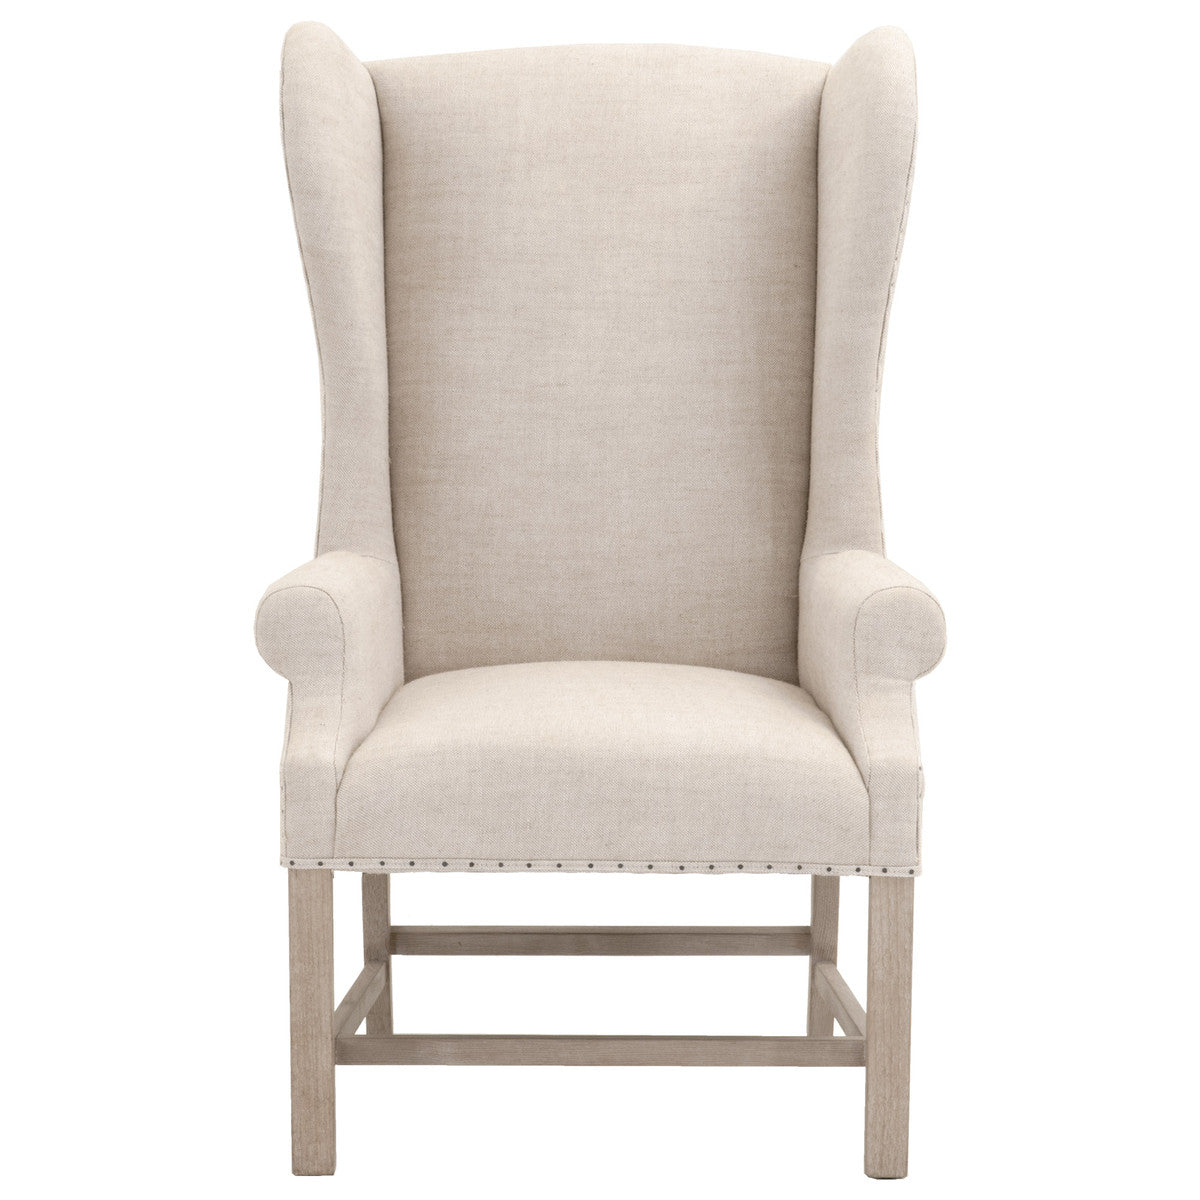 Campden Arm Chair